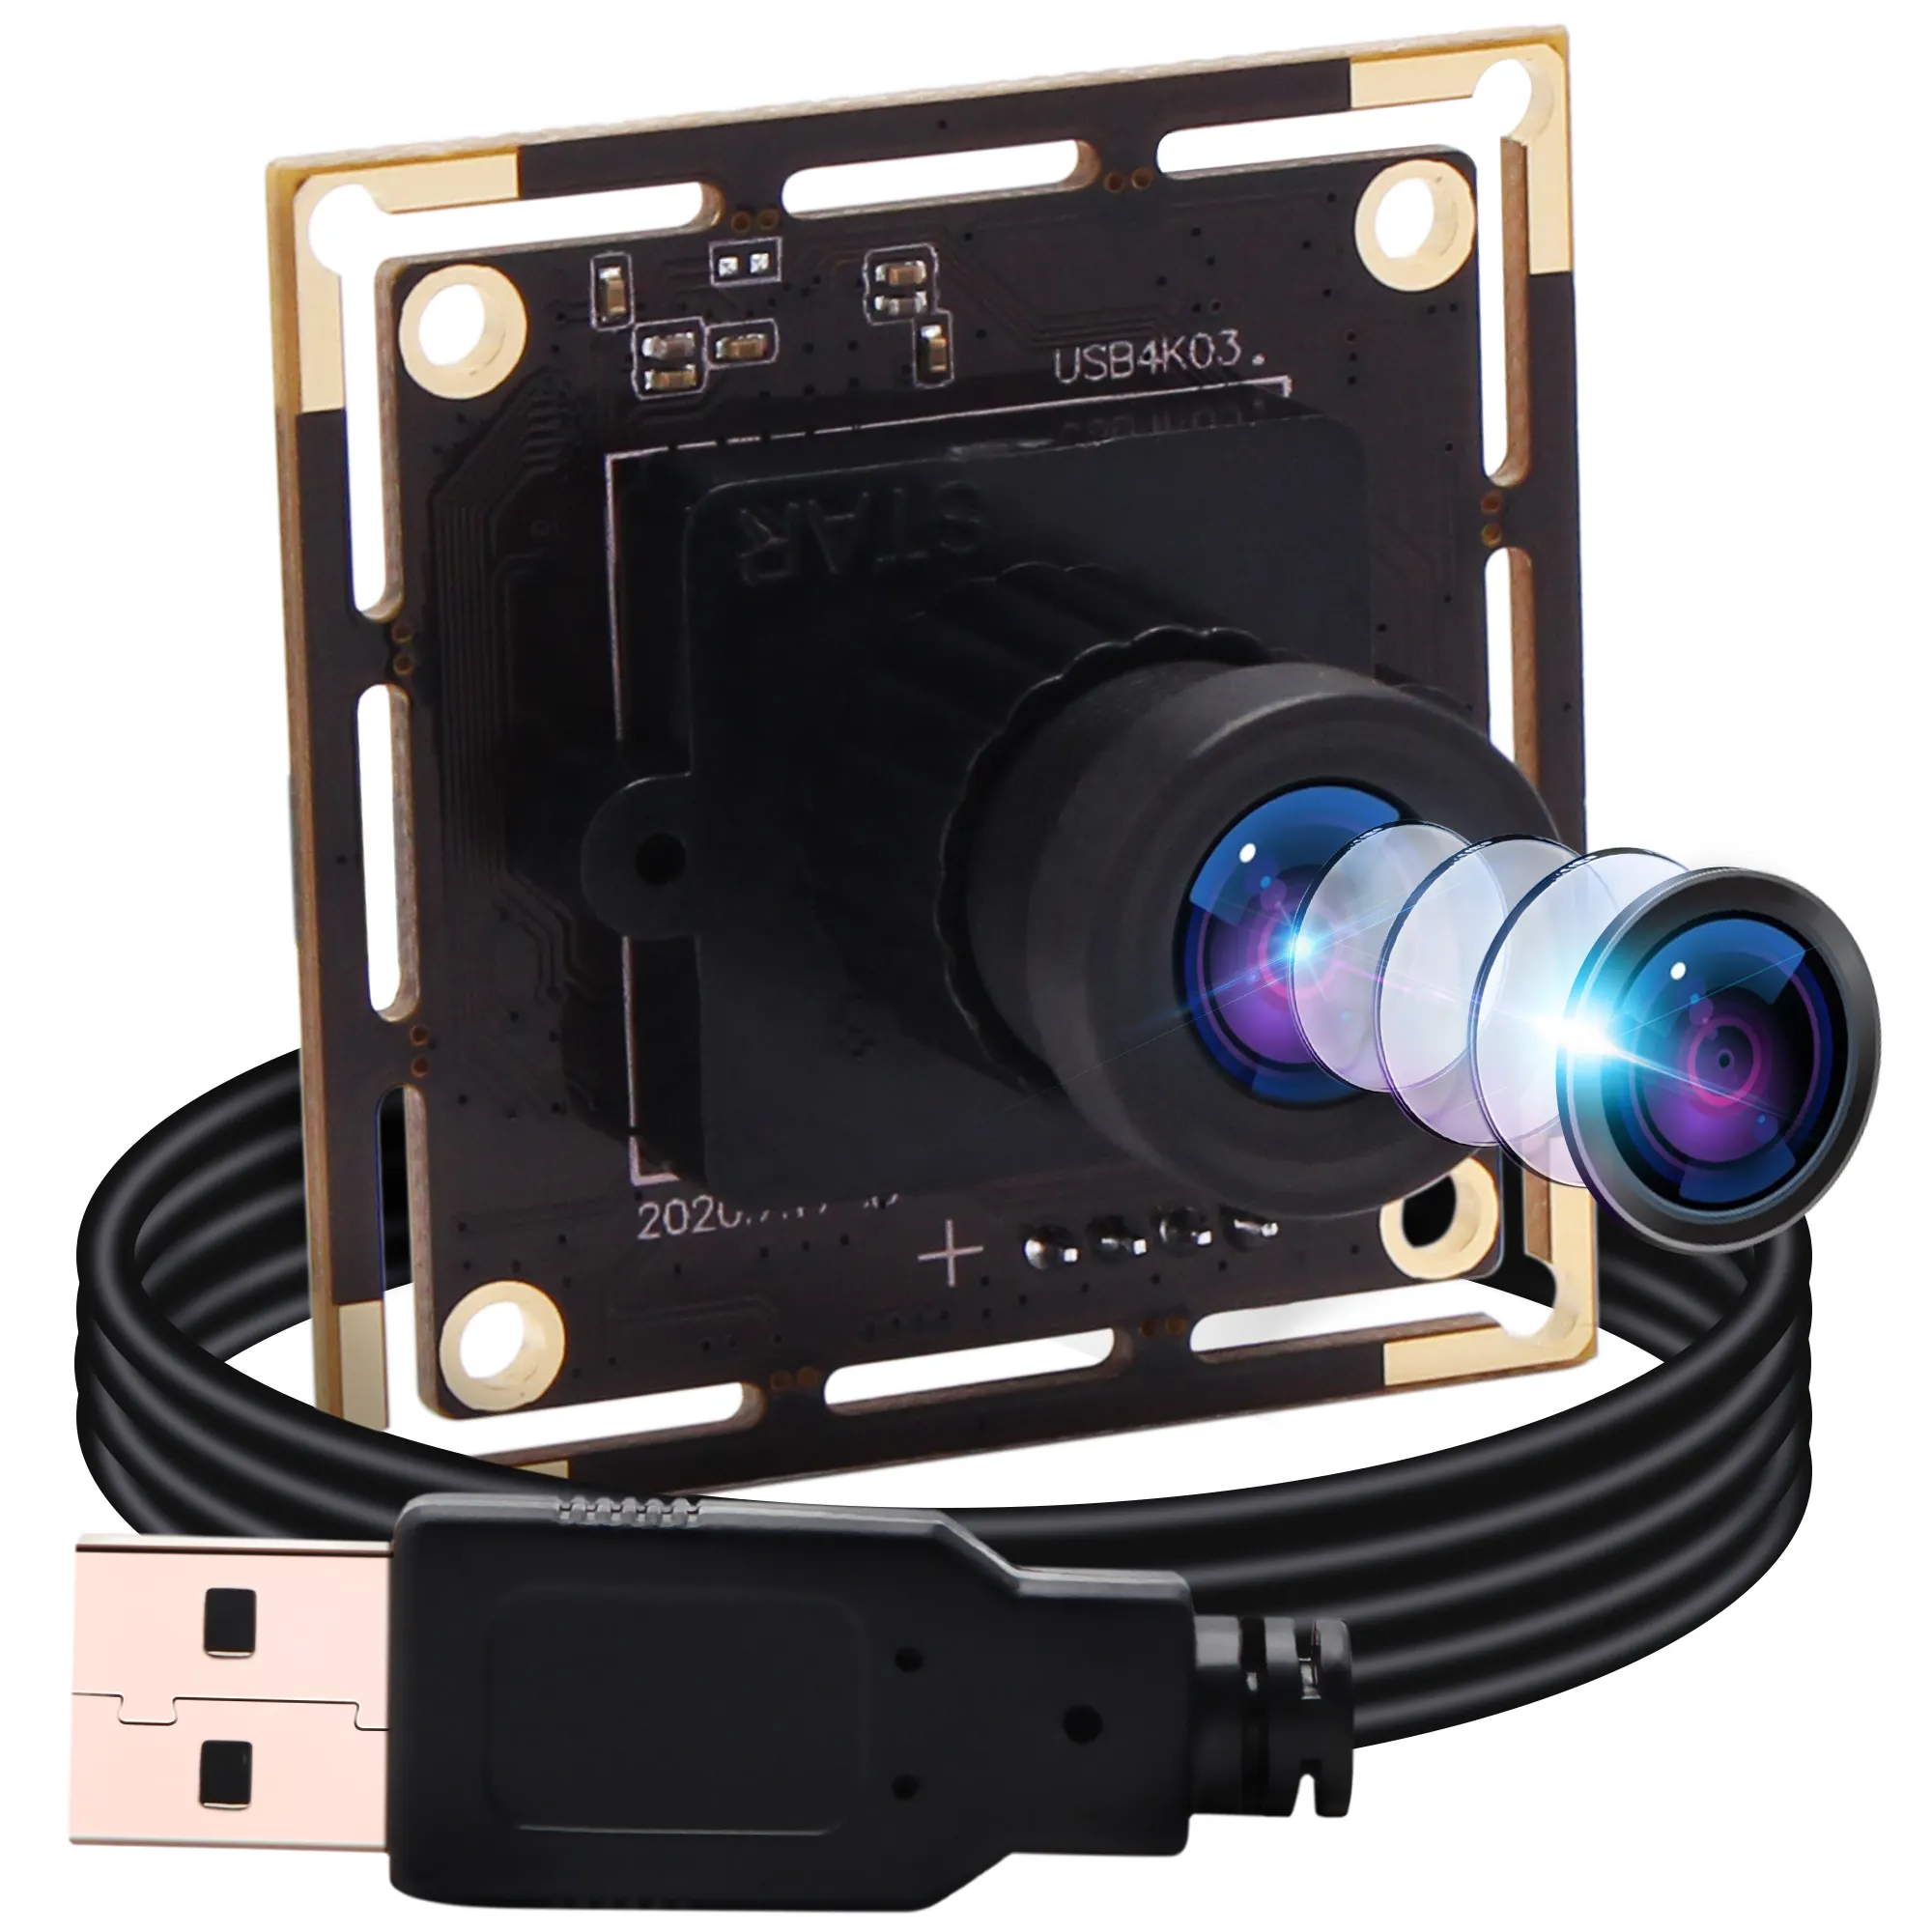 HD 4K USB-Kamera modul IMX415 Mini-USB-Kamera platine mit M12-Objektiv für Computer PC Desktop-Laptop